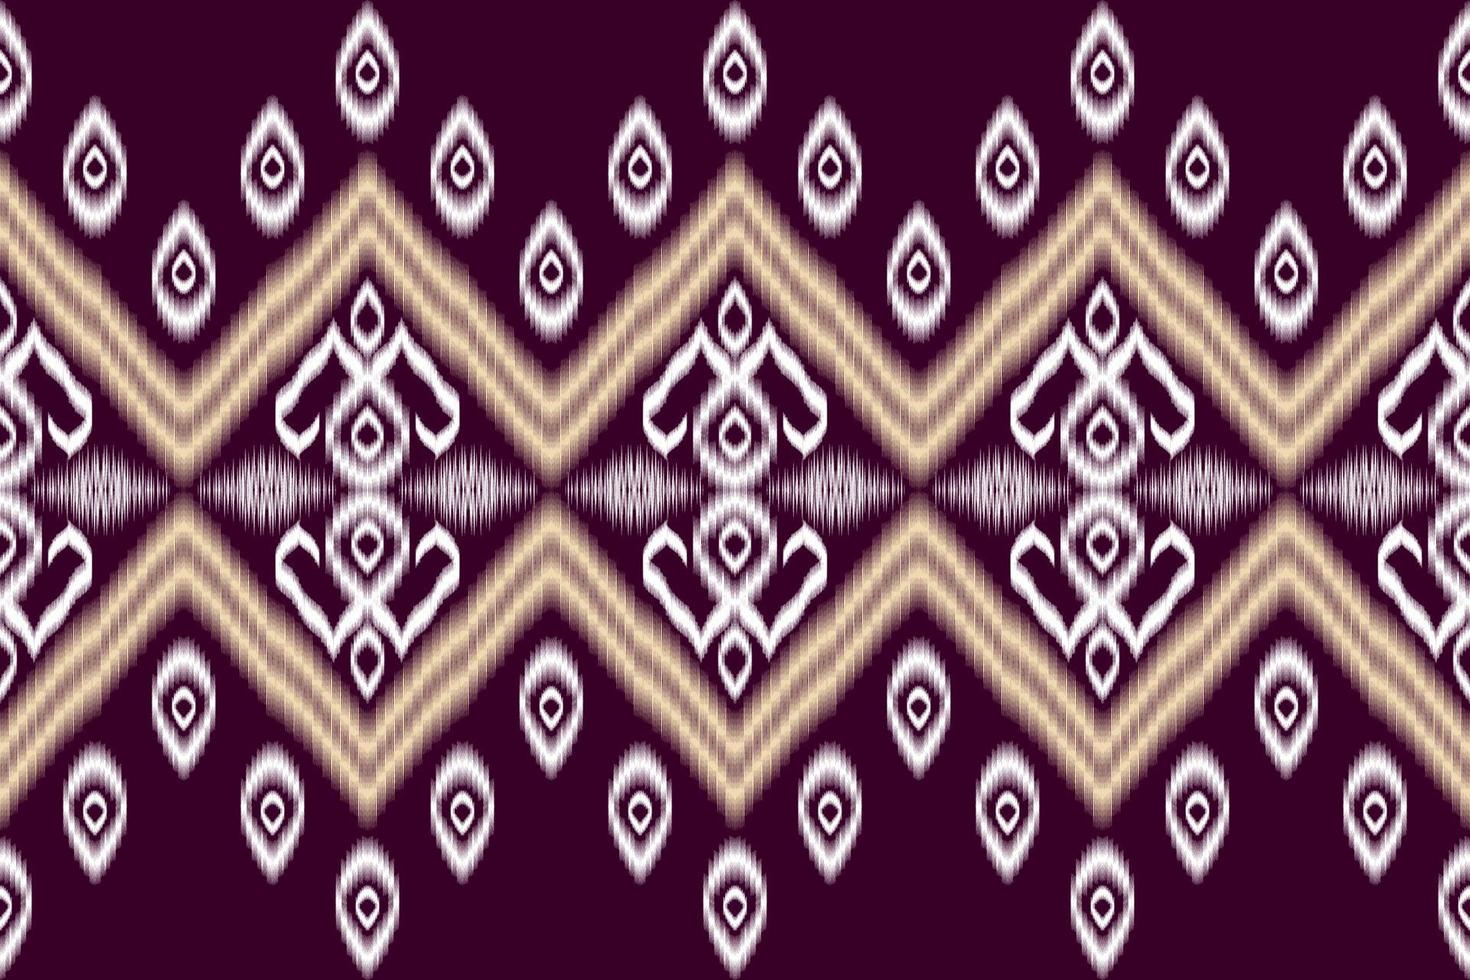 patrón de arte tradicional oriental étnico geométrico.figura estilo de bordado tribal.diseño para antecedentes étnicos, papel tapiz, ropa, envoltura, tela, elemento, sarong, ilustración vectorial. vector